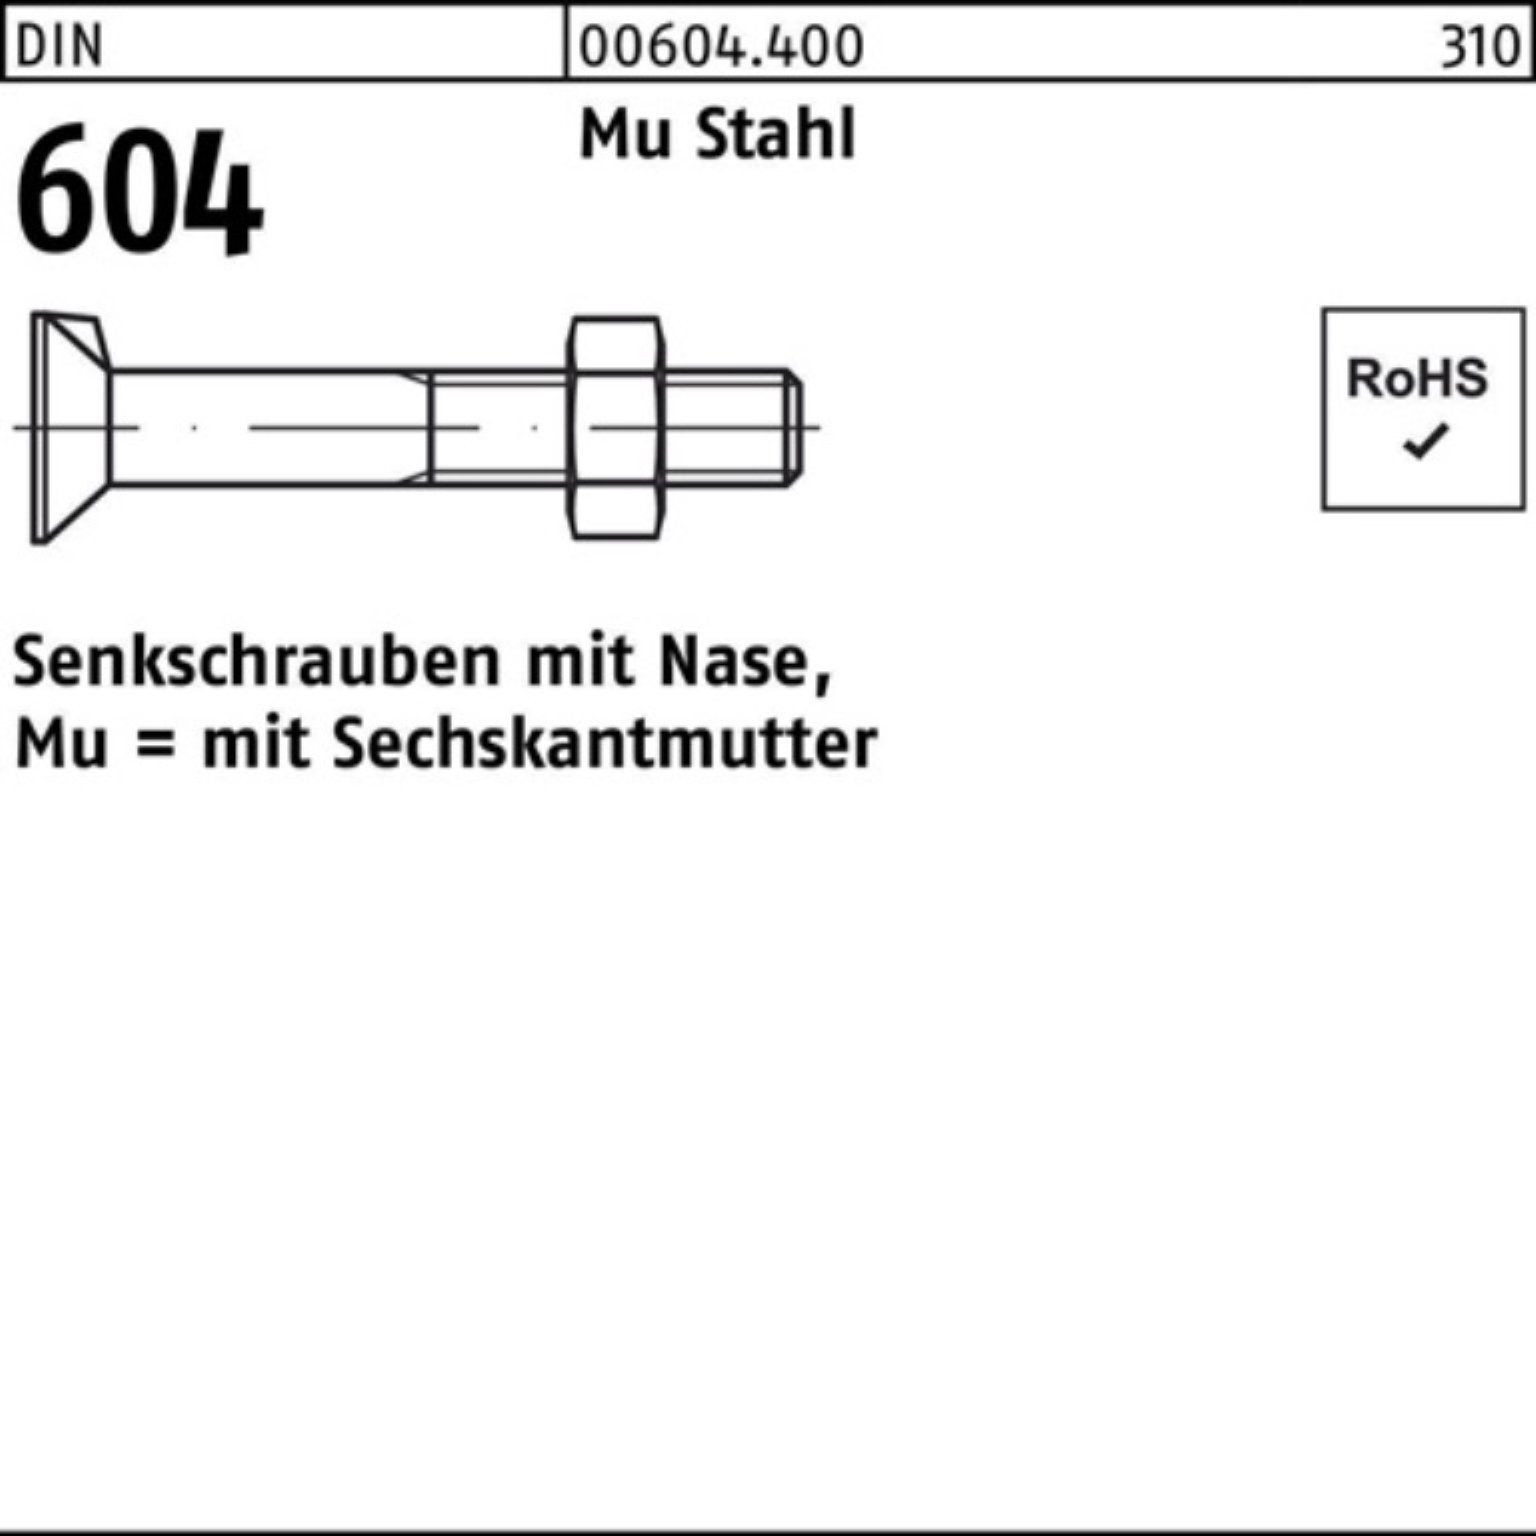 Reyher Senkschraube 100er Pack Senkschraube DIN 604 Nase/6-ktmutter M12x 50 Mu Stahl 4.6 1